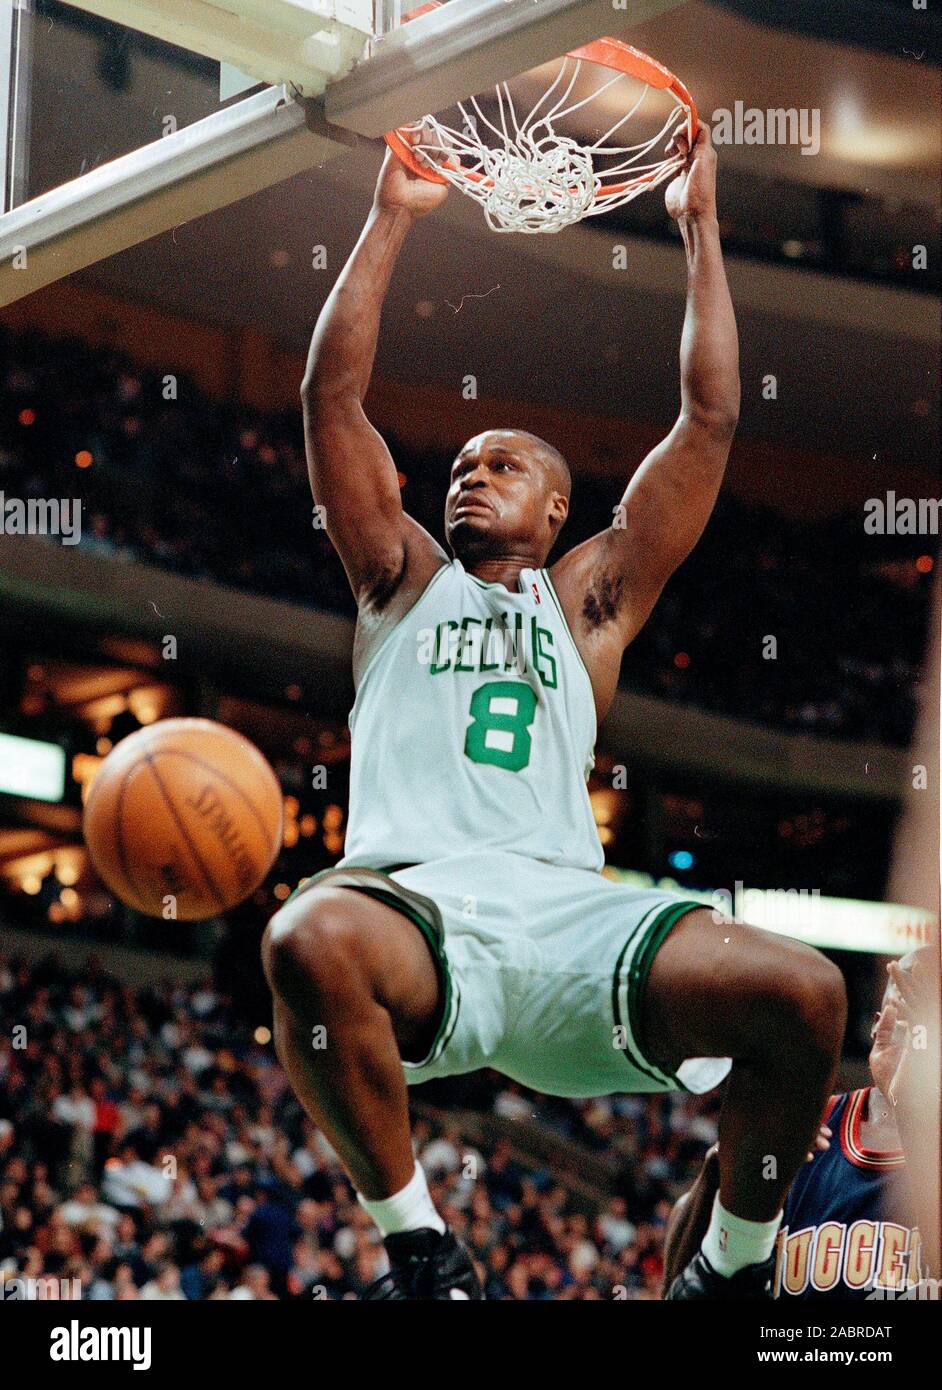 Boston Celtics #8 Antoine Walker die Kugel im Basketball Spiel gegen die Denver Nuggets Dunks im Fleet Center in Boston, Ma USA Mar 15,1999 Foto von Bill belknap Stockfoto